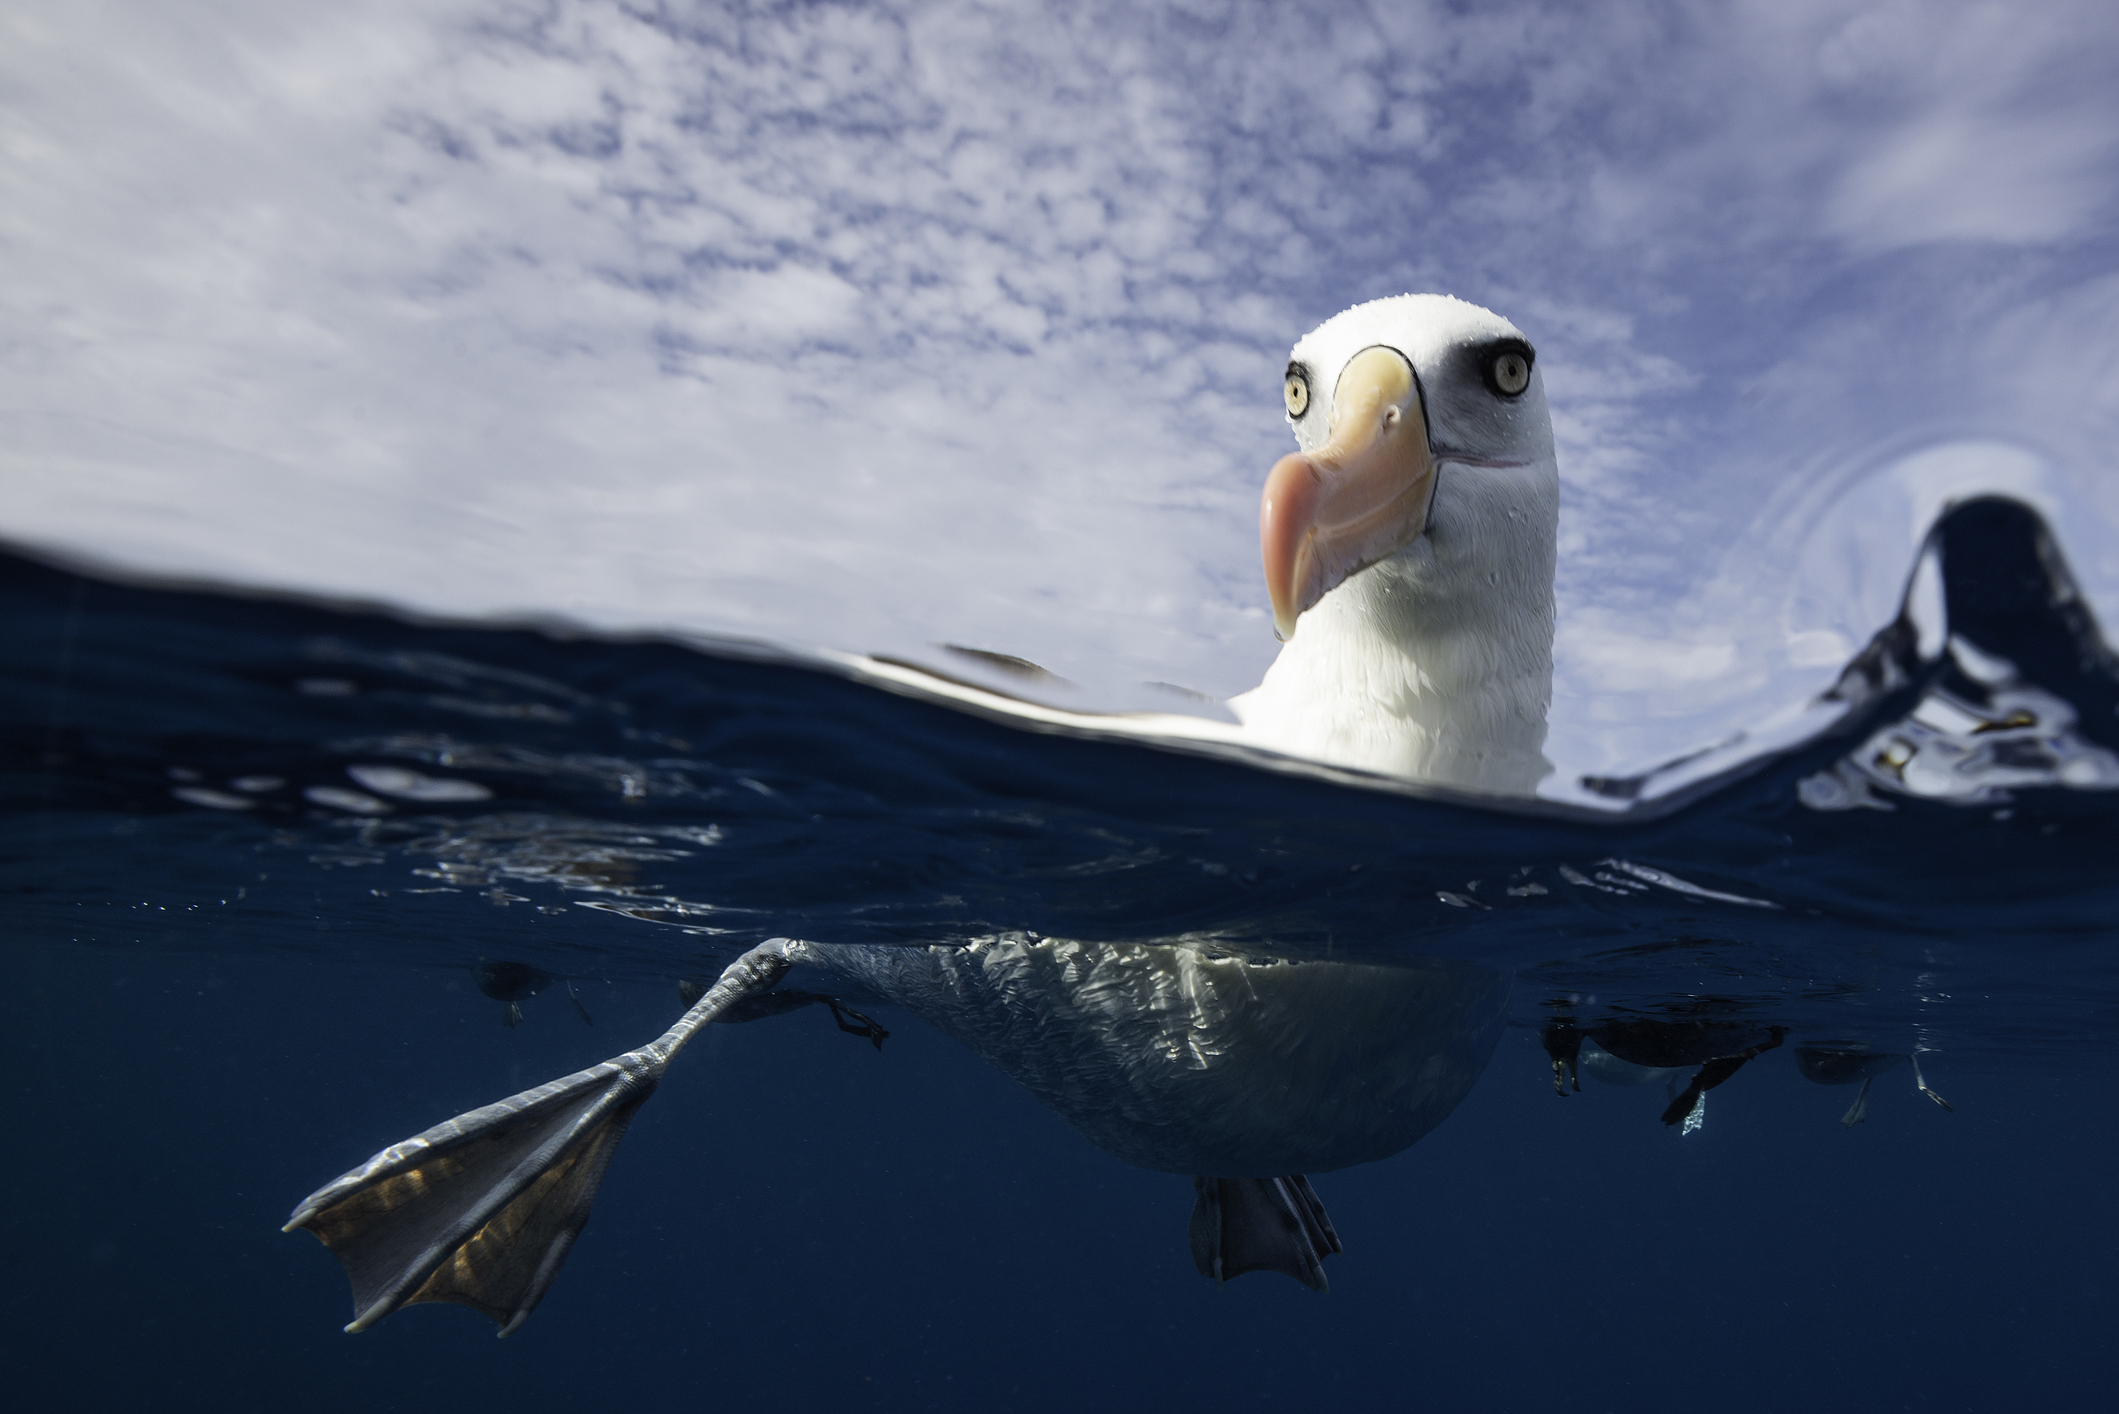 Альбатросы способны нырять на гораздо большие глубины, чем считалось.Вокруг Света. Украина